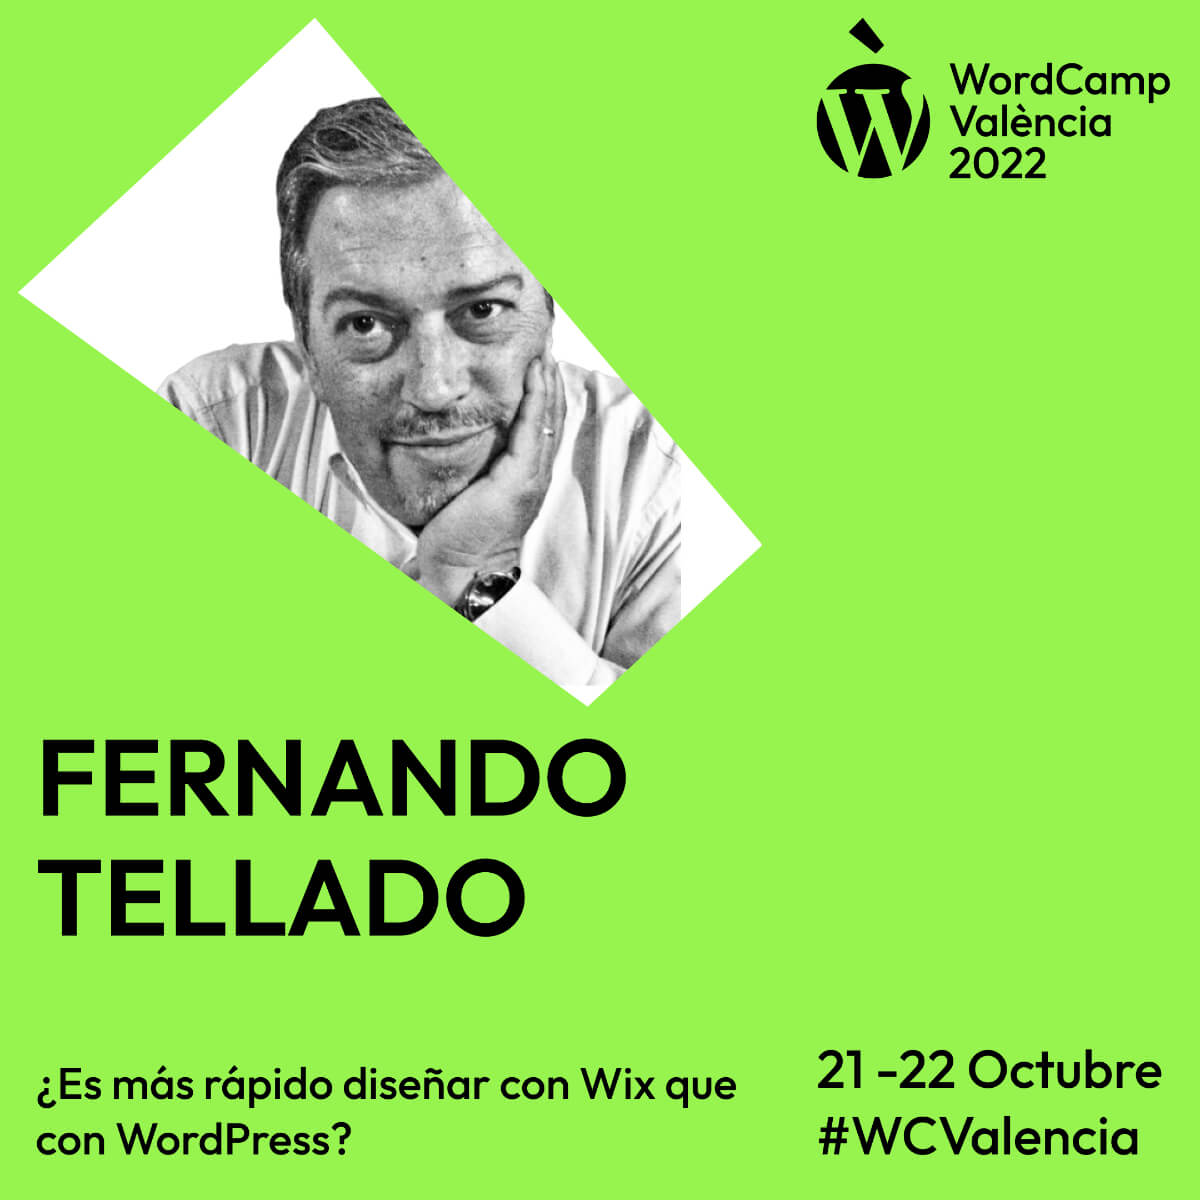 Fernando Tellado WCVLC 2022